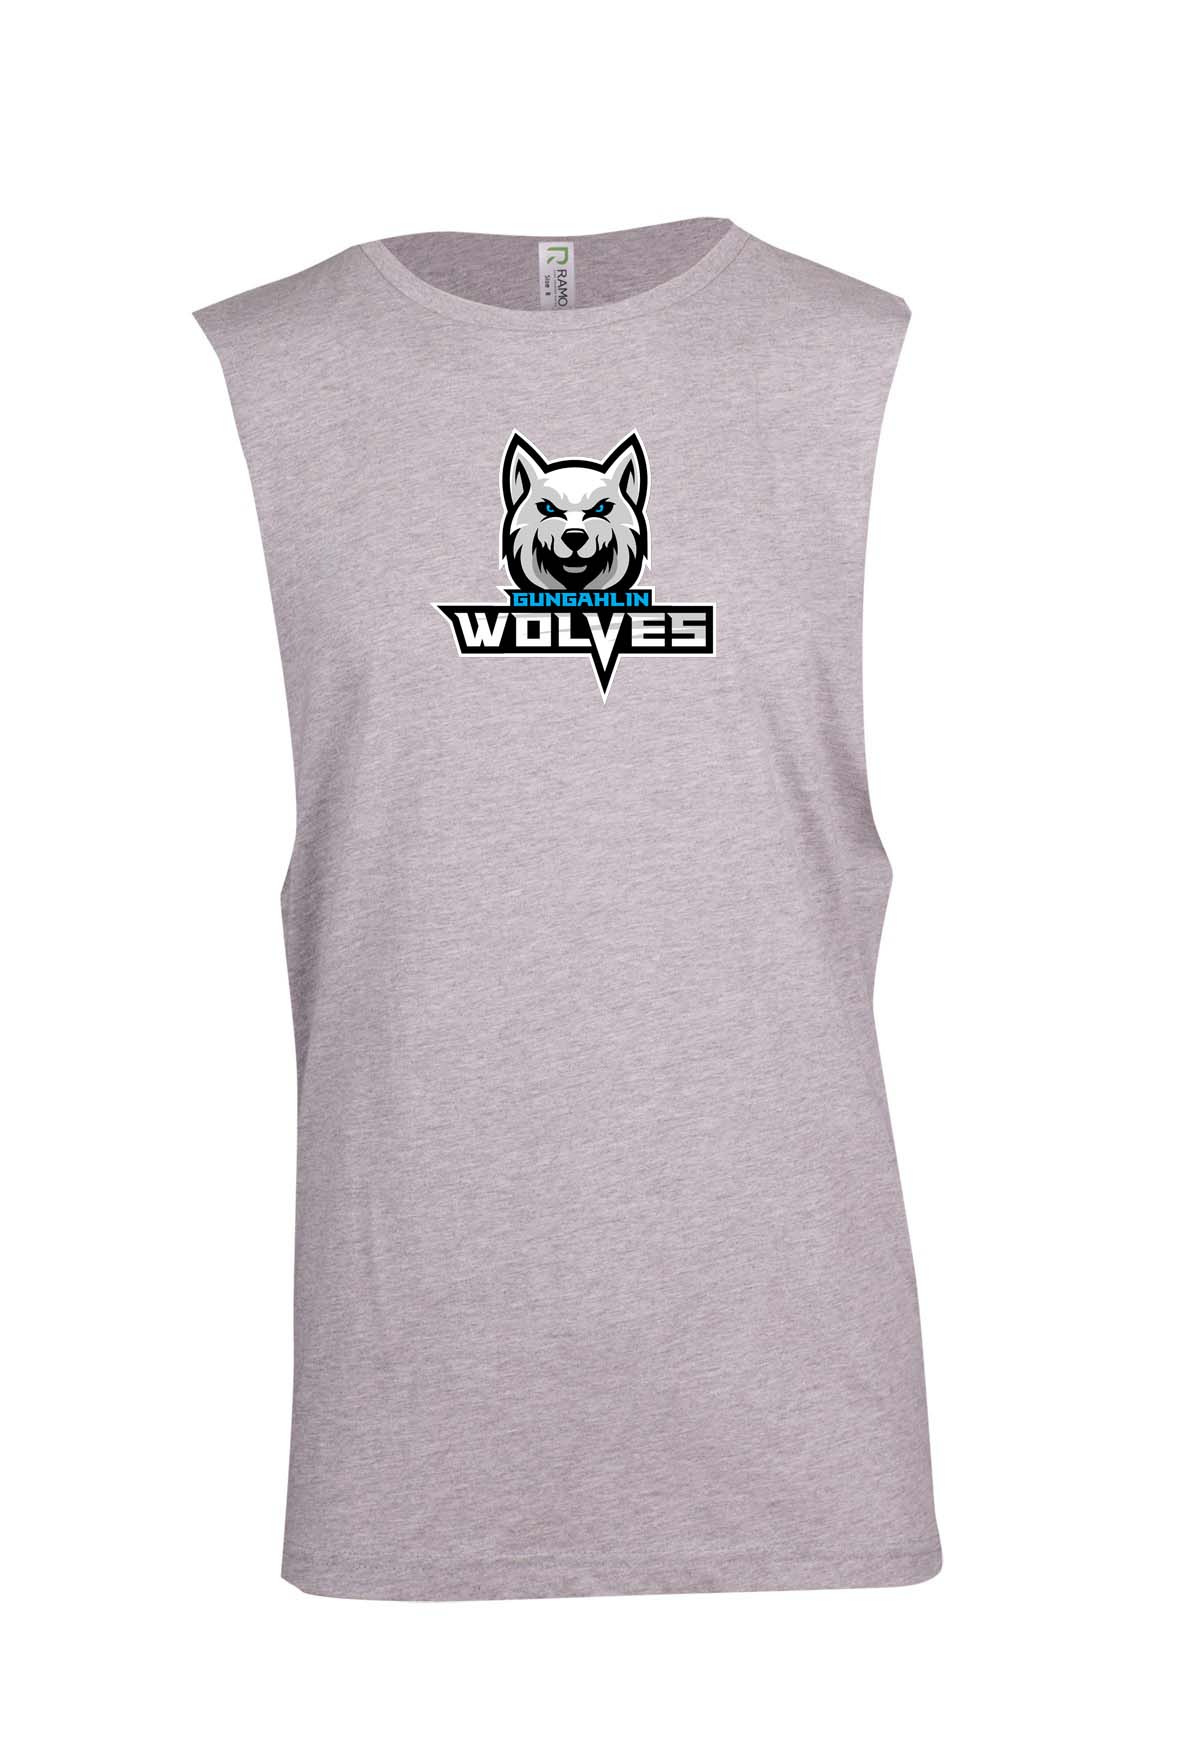 Gungahlin Wolves Logo Muscle Shirt